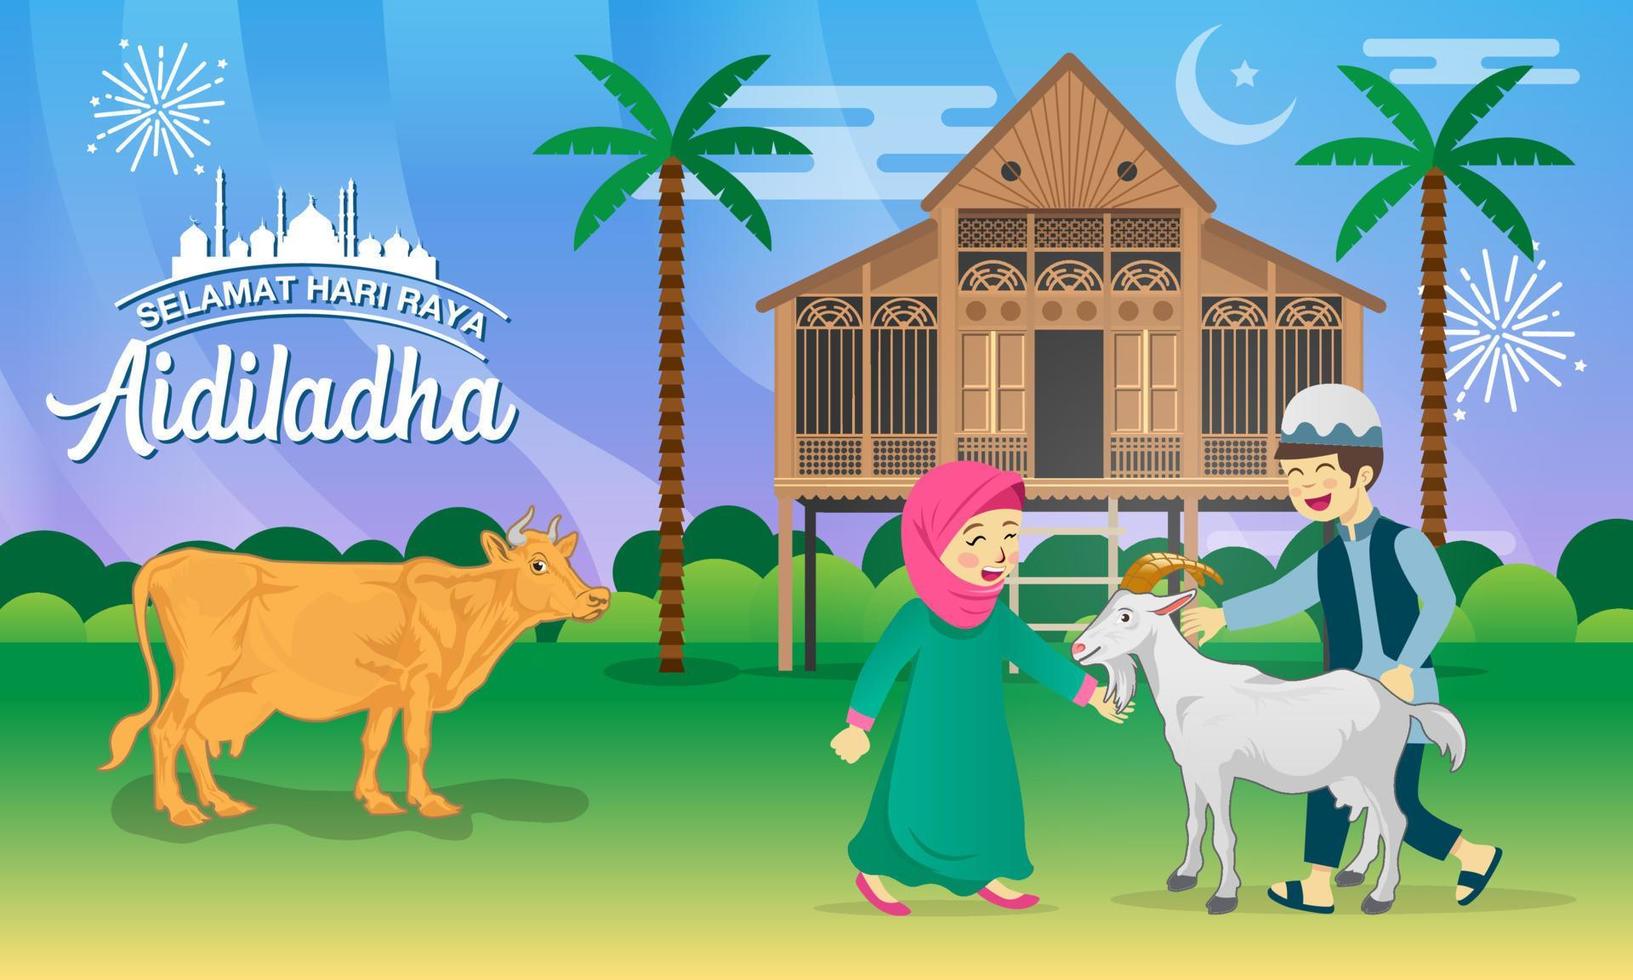 eid al adha saluto carta. cartone animato musulmano bambini festeggiare eid al adha con capra, mucca, e tradizionale malese villaggio Casa vettore